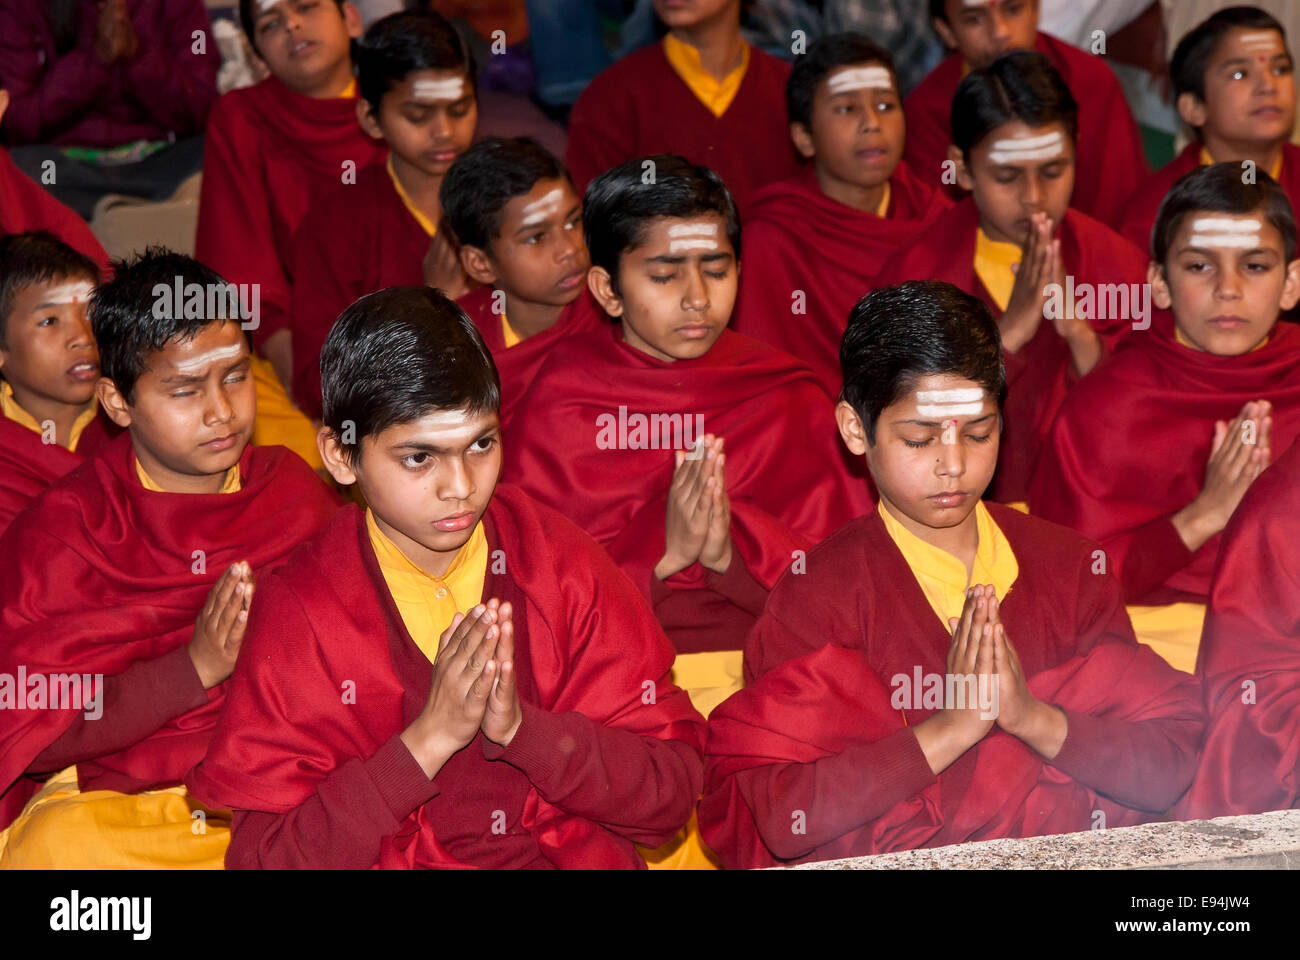 Jeunes moines prier durant une cérémonie religieuse, de l'Inde Banque D'Images